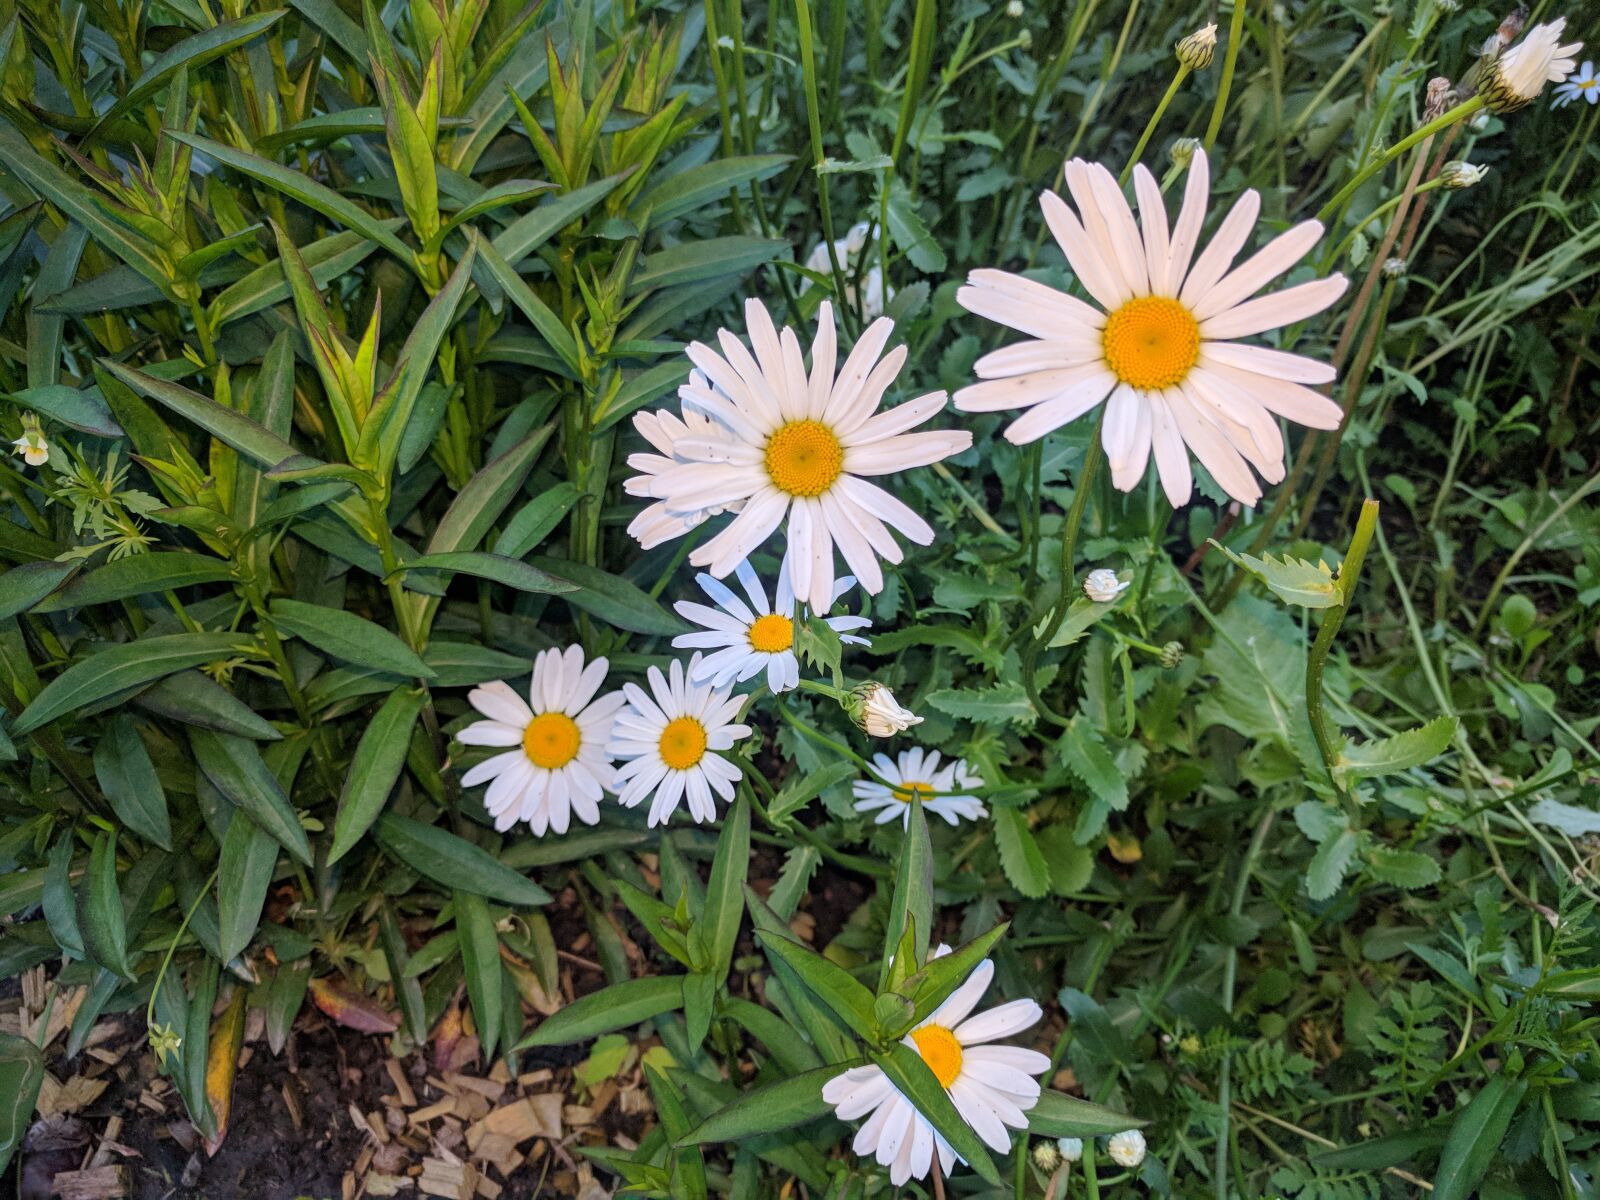 LG Nexus 5X sample photo. Daisy, daisy flowers, nature photography